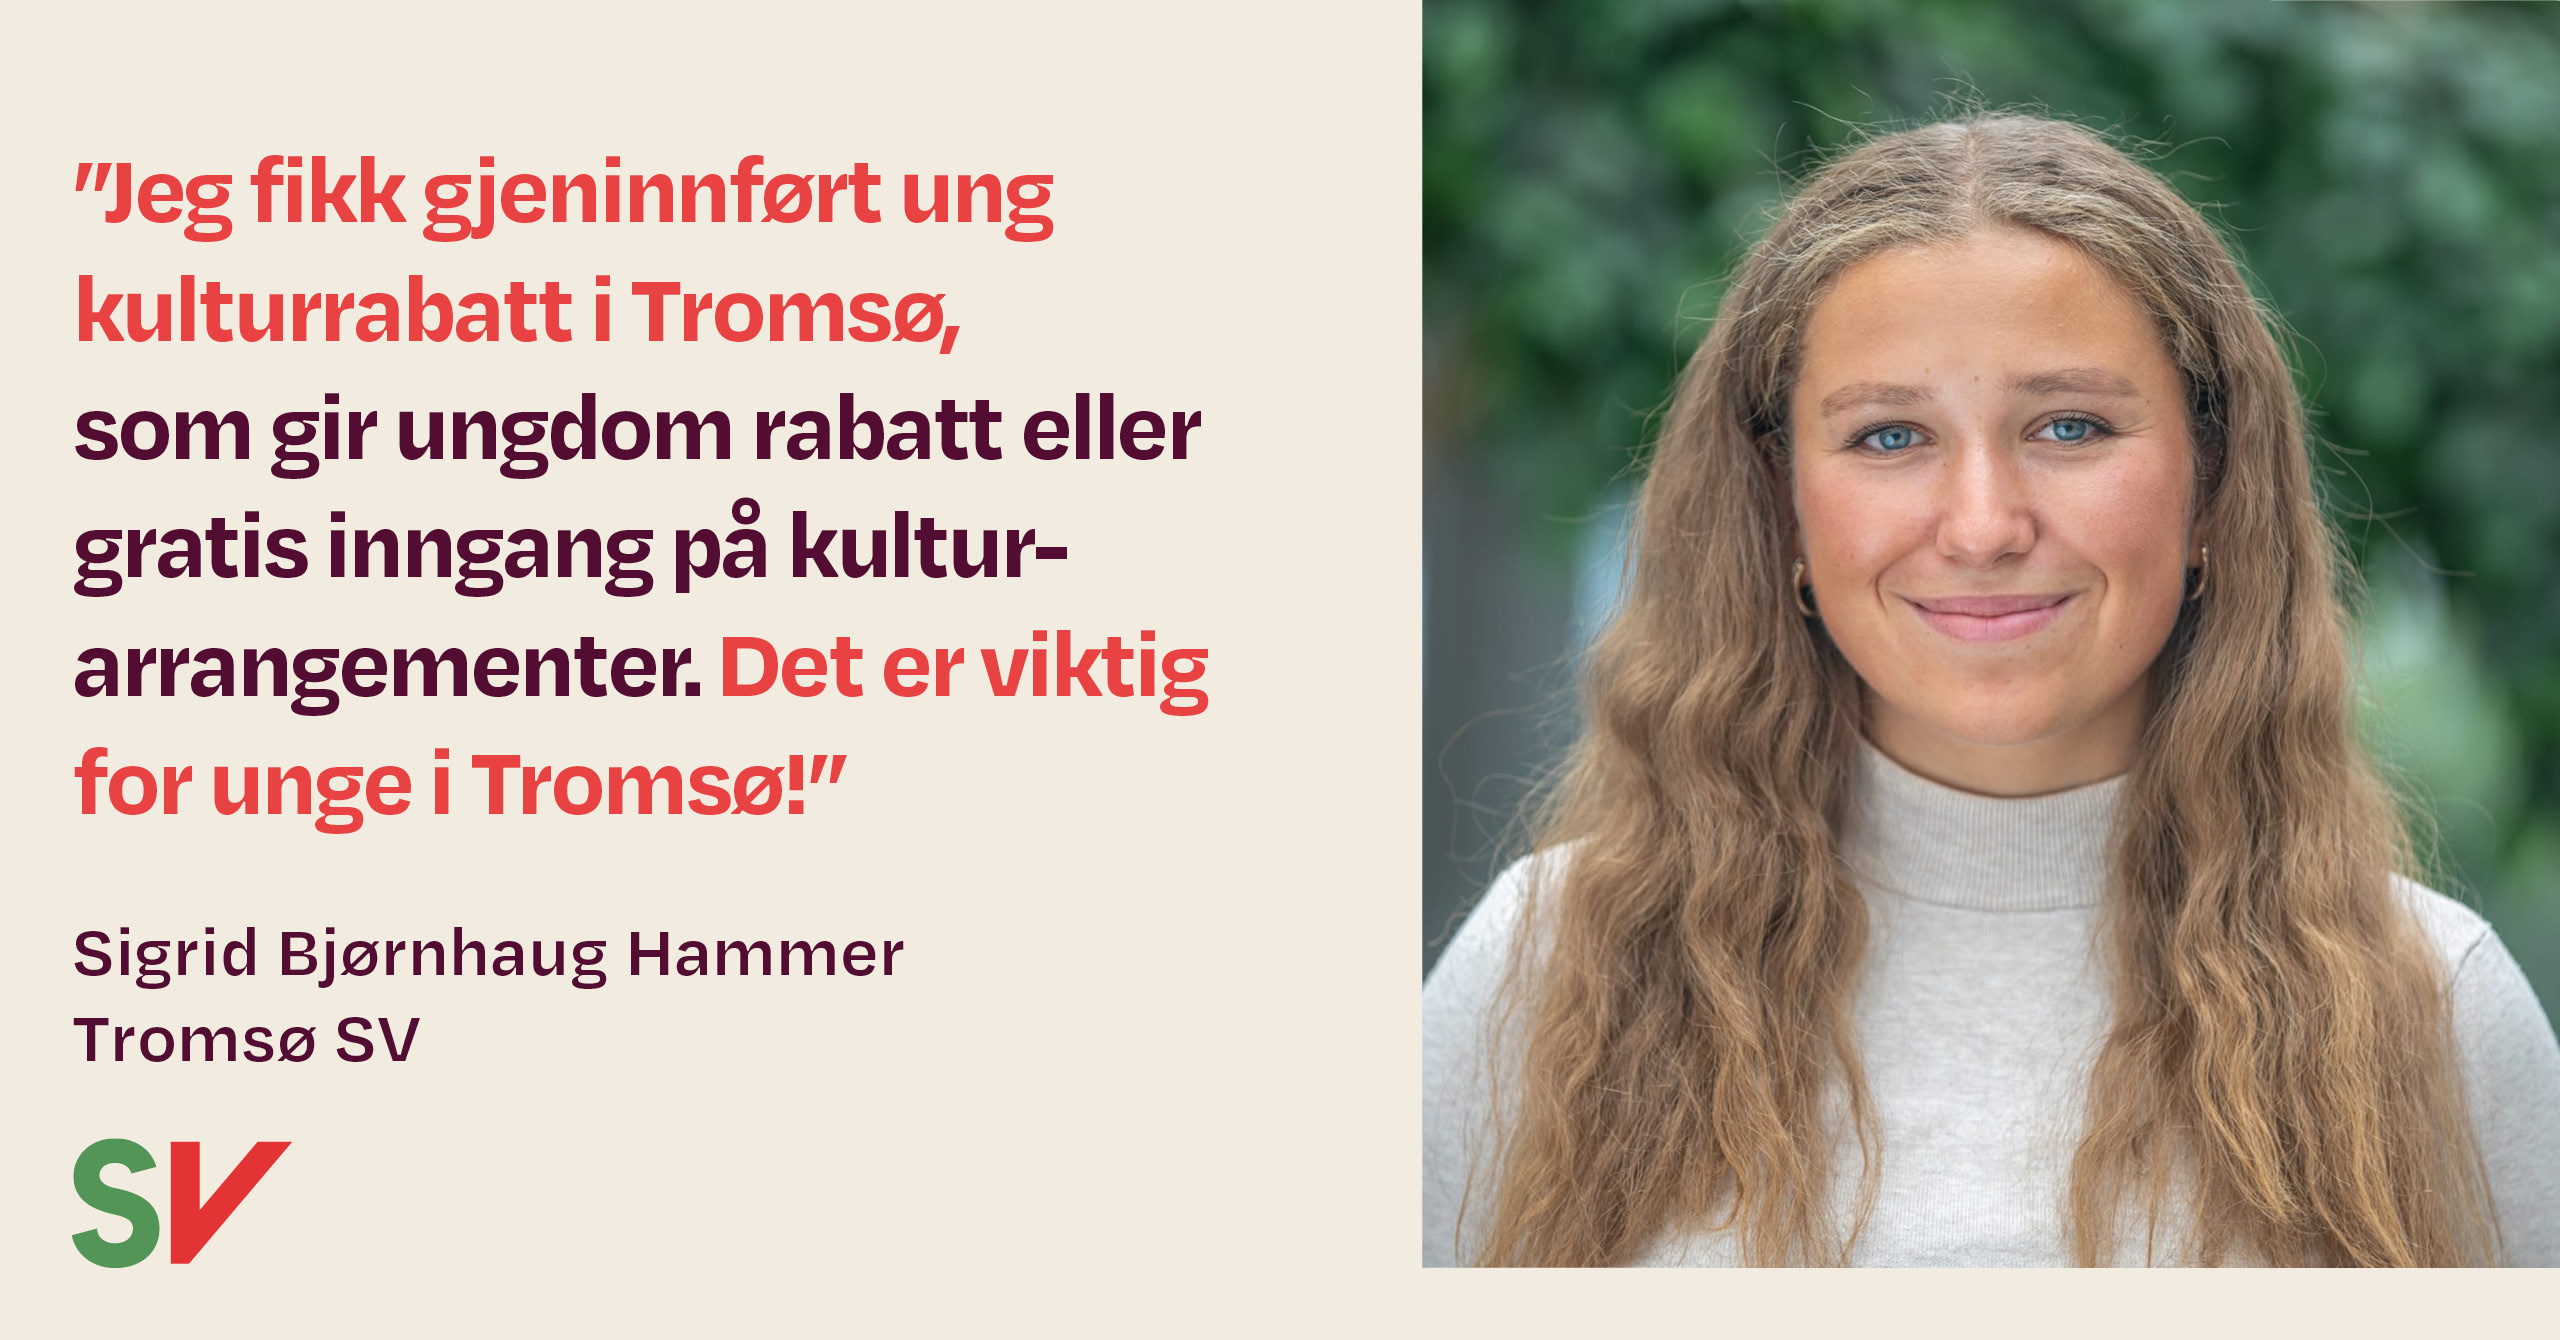 Jeg fikk gjeninnført ung kulturrabatt i Tromsø, som gir ungdom rabatt eller gratis inngang på kulturarrangementer - sitat Sigrud Hammer - tekst med bilde av Sigrid